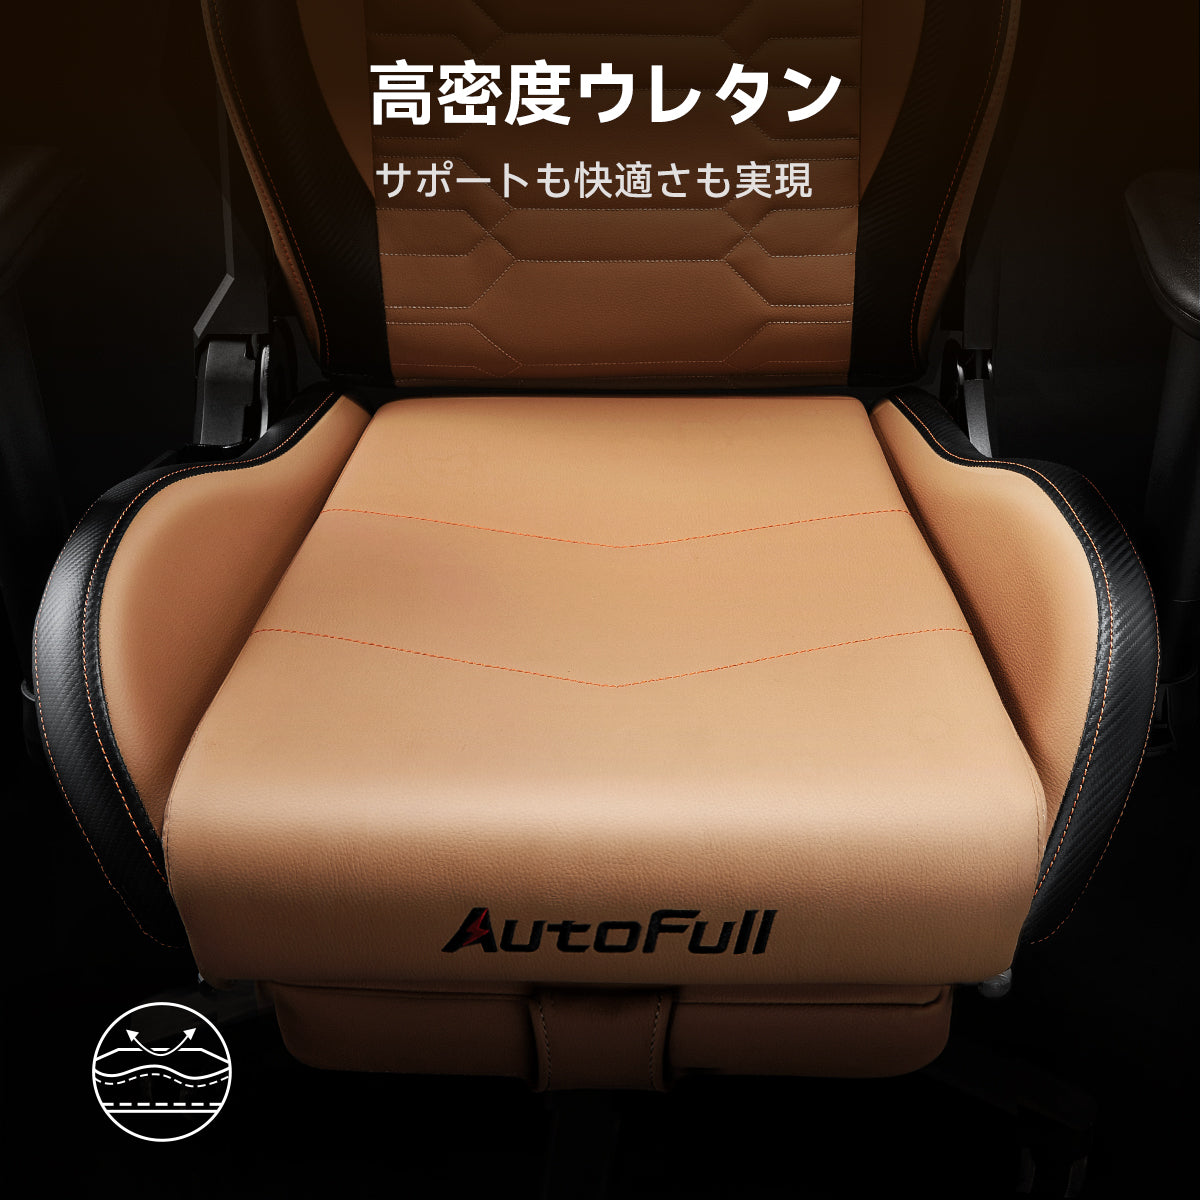 AutoFull(オートフル) C3 ゲーミングチェア オフィスチェア 昇降アームレスト 腰痛対策 茶色